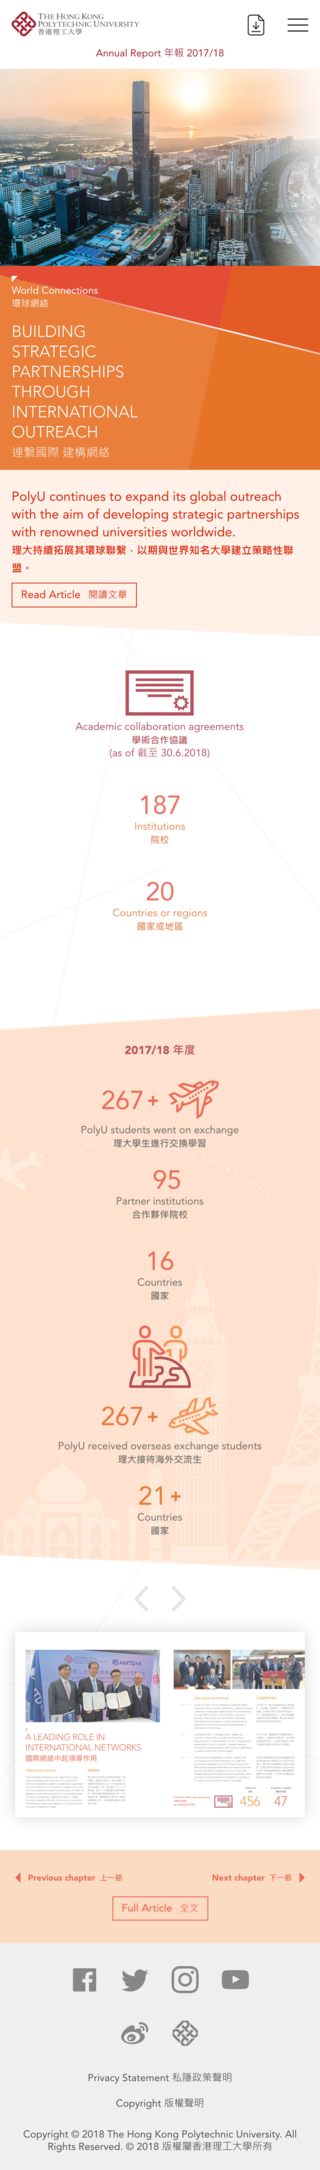 Hong Kong Polytechnic University website screenshot for mobile version 3 of 4